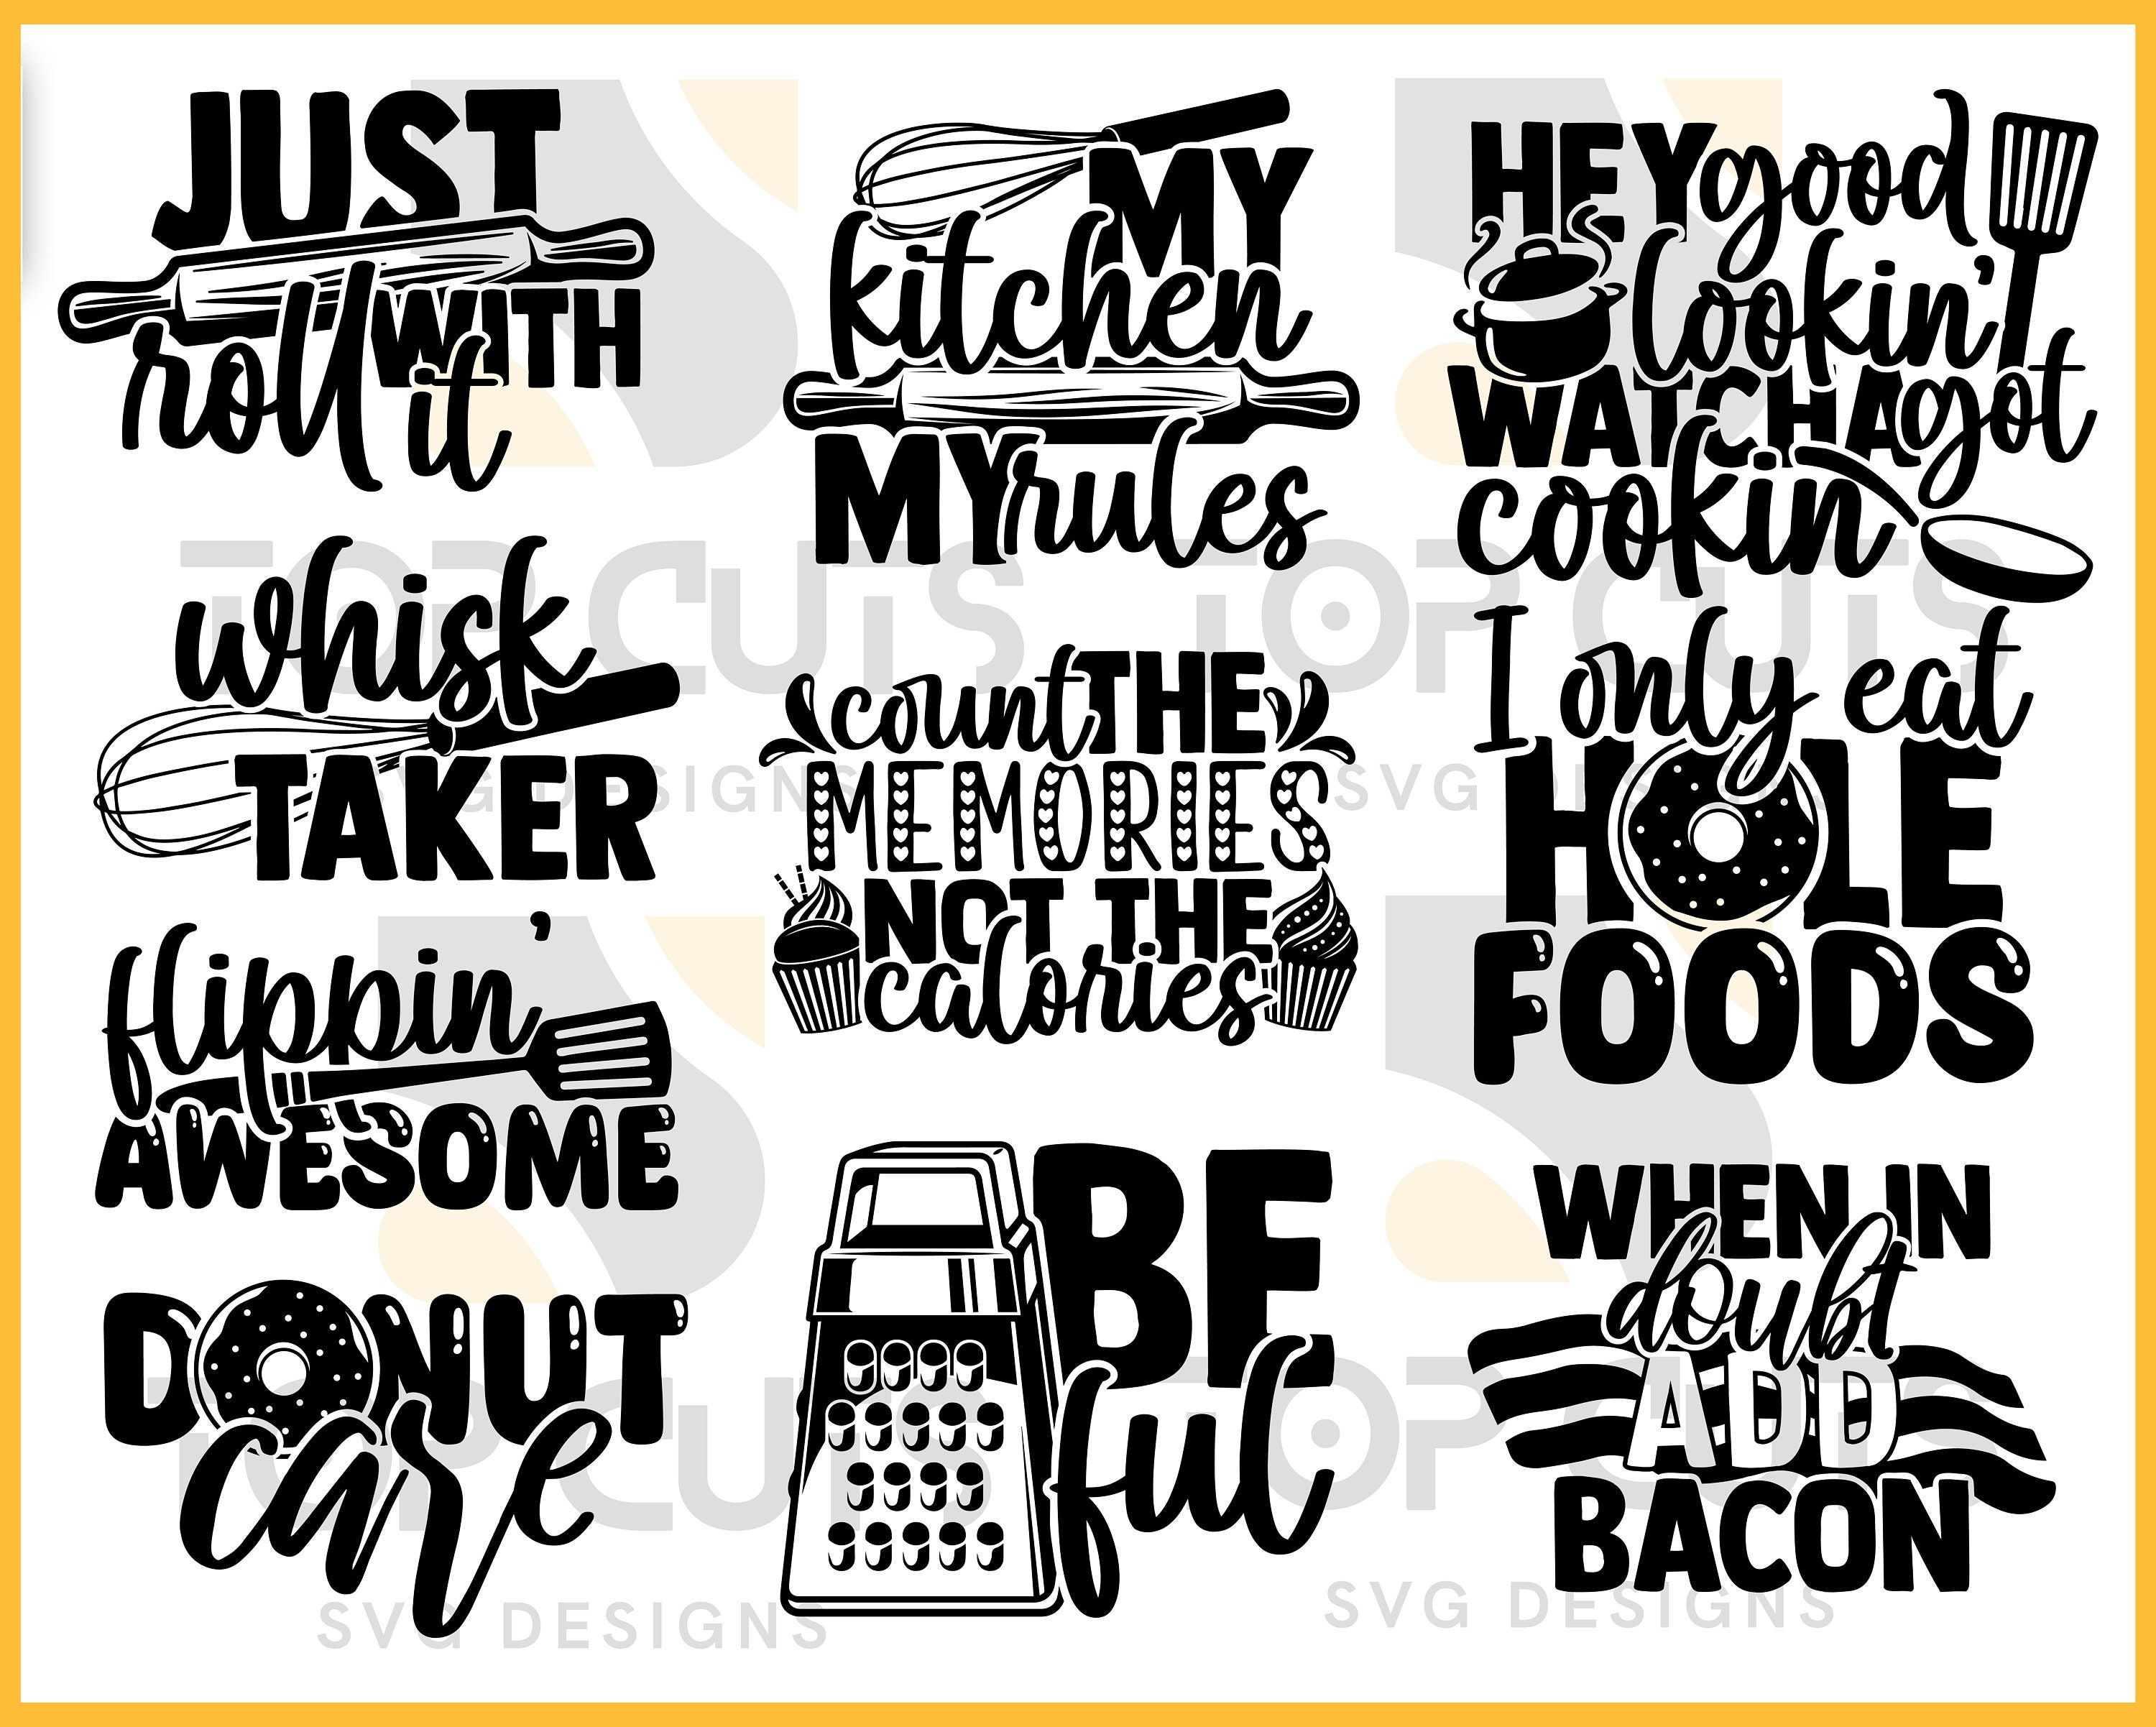 Funny Kitchen SVG Bundle, Kitchen Quotes By dapiyupi